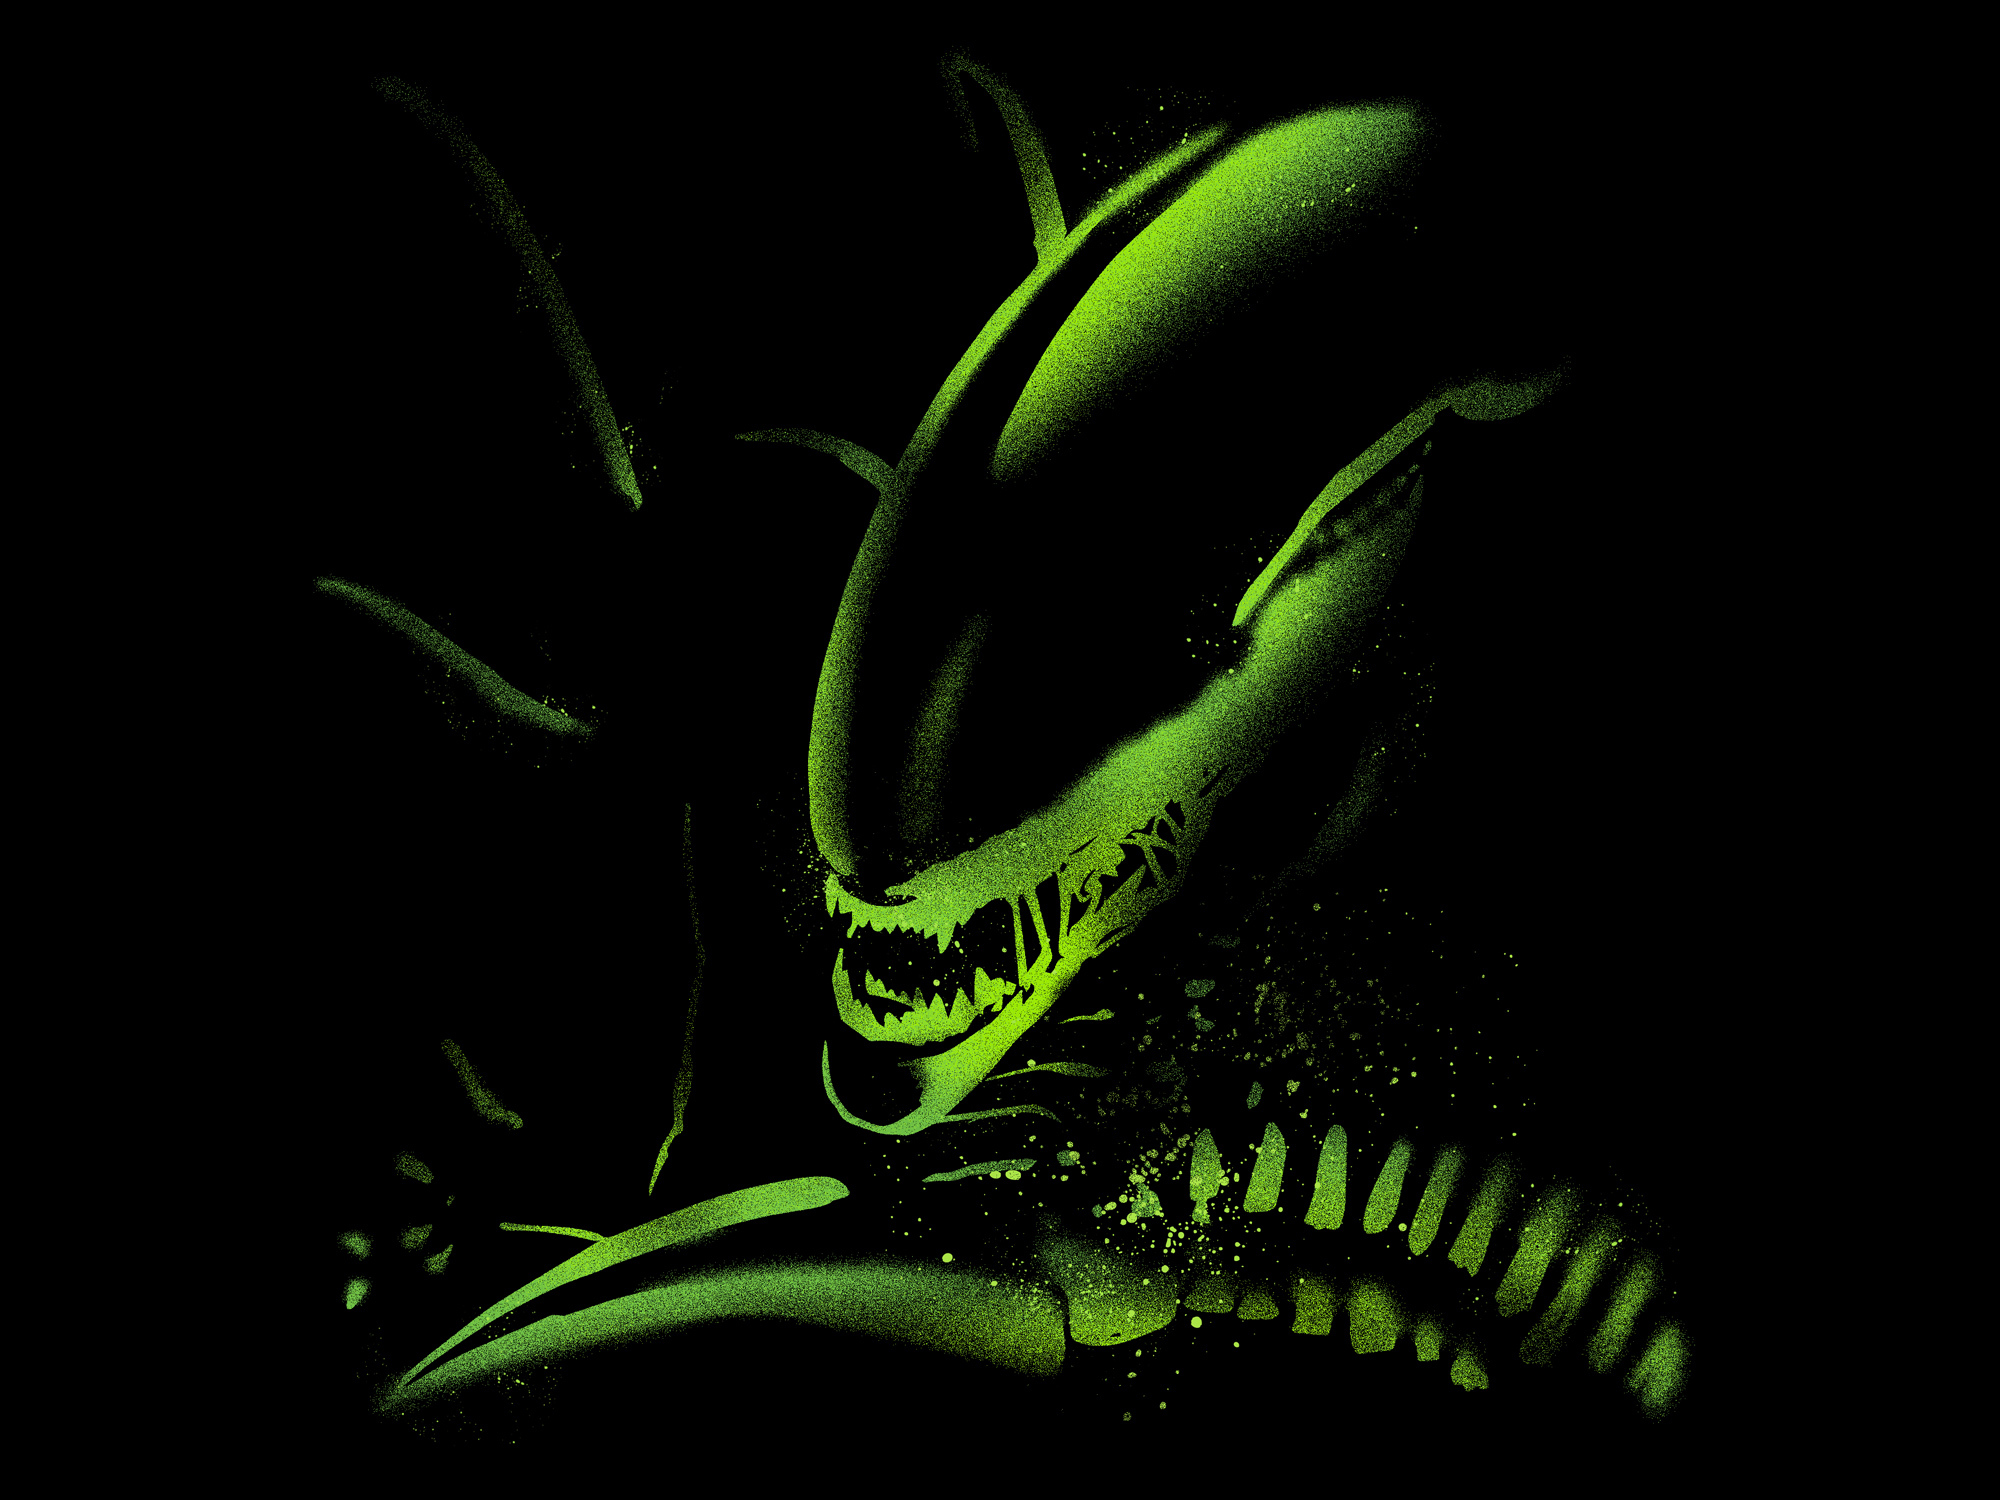 Alien mattson 06